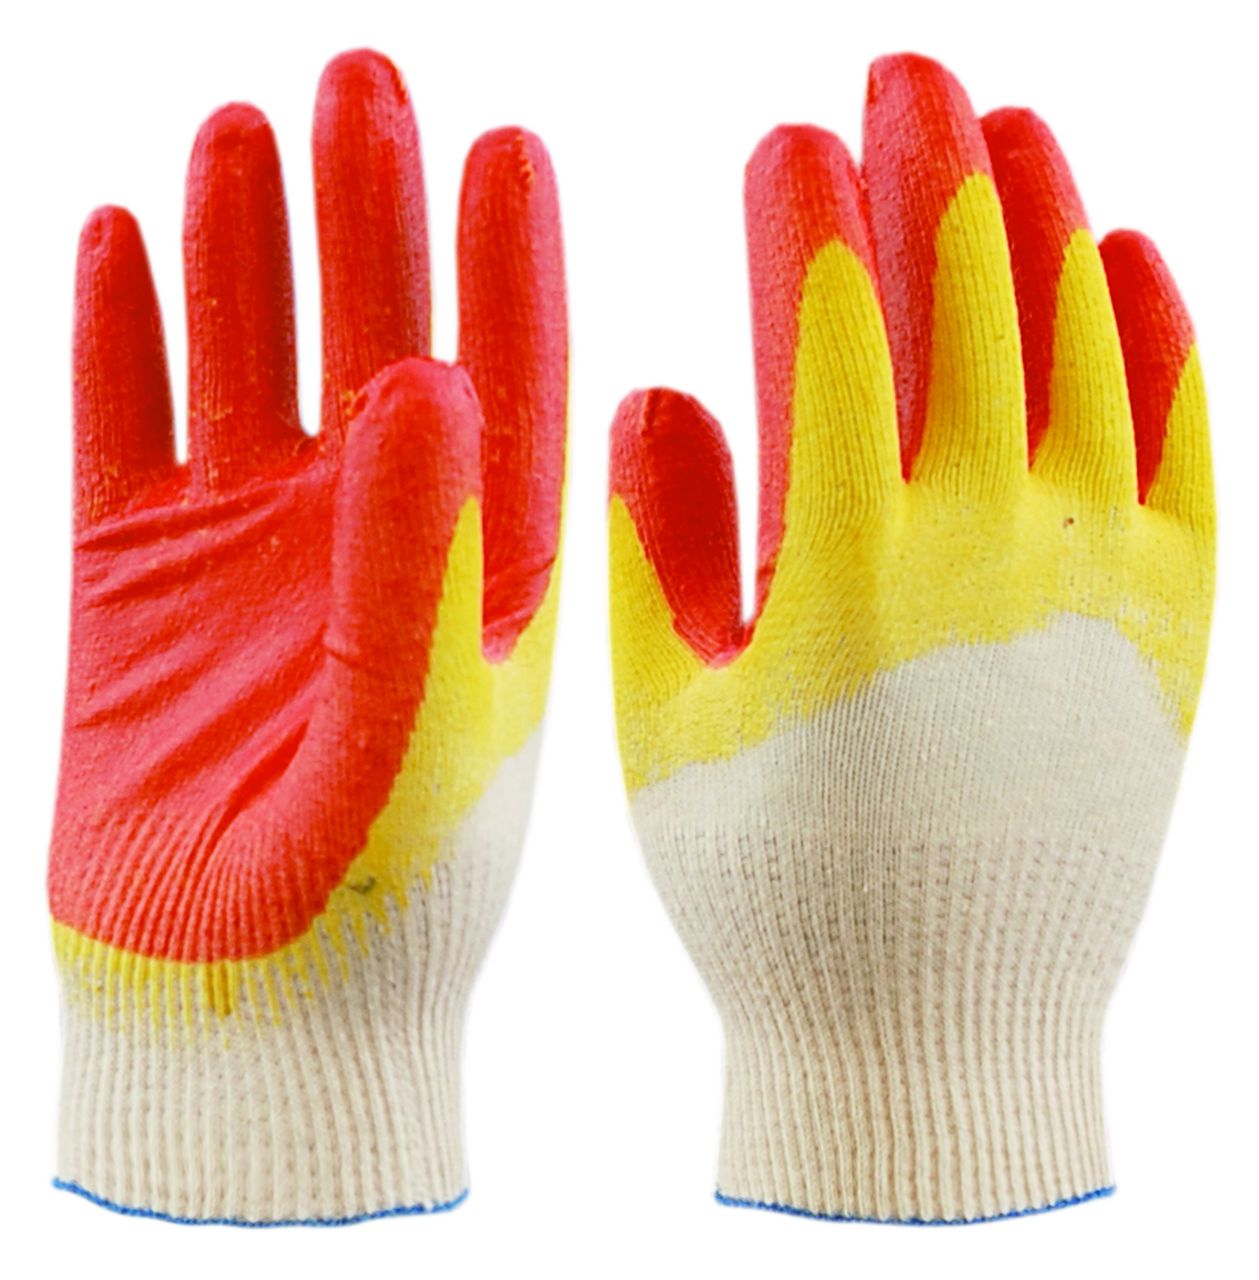 Перчатки ХБ с двойным латексным покрытием (обливом),красные/желтые, класс вязки 10-й, 300пар/уп